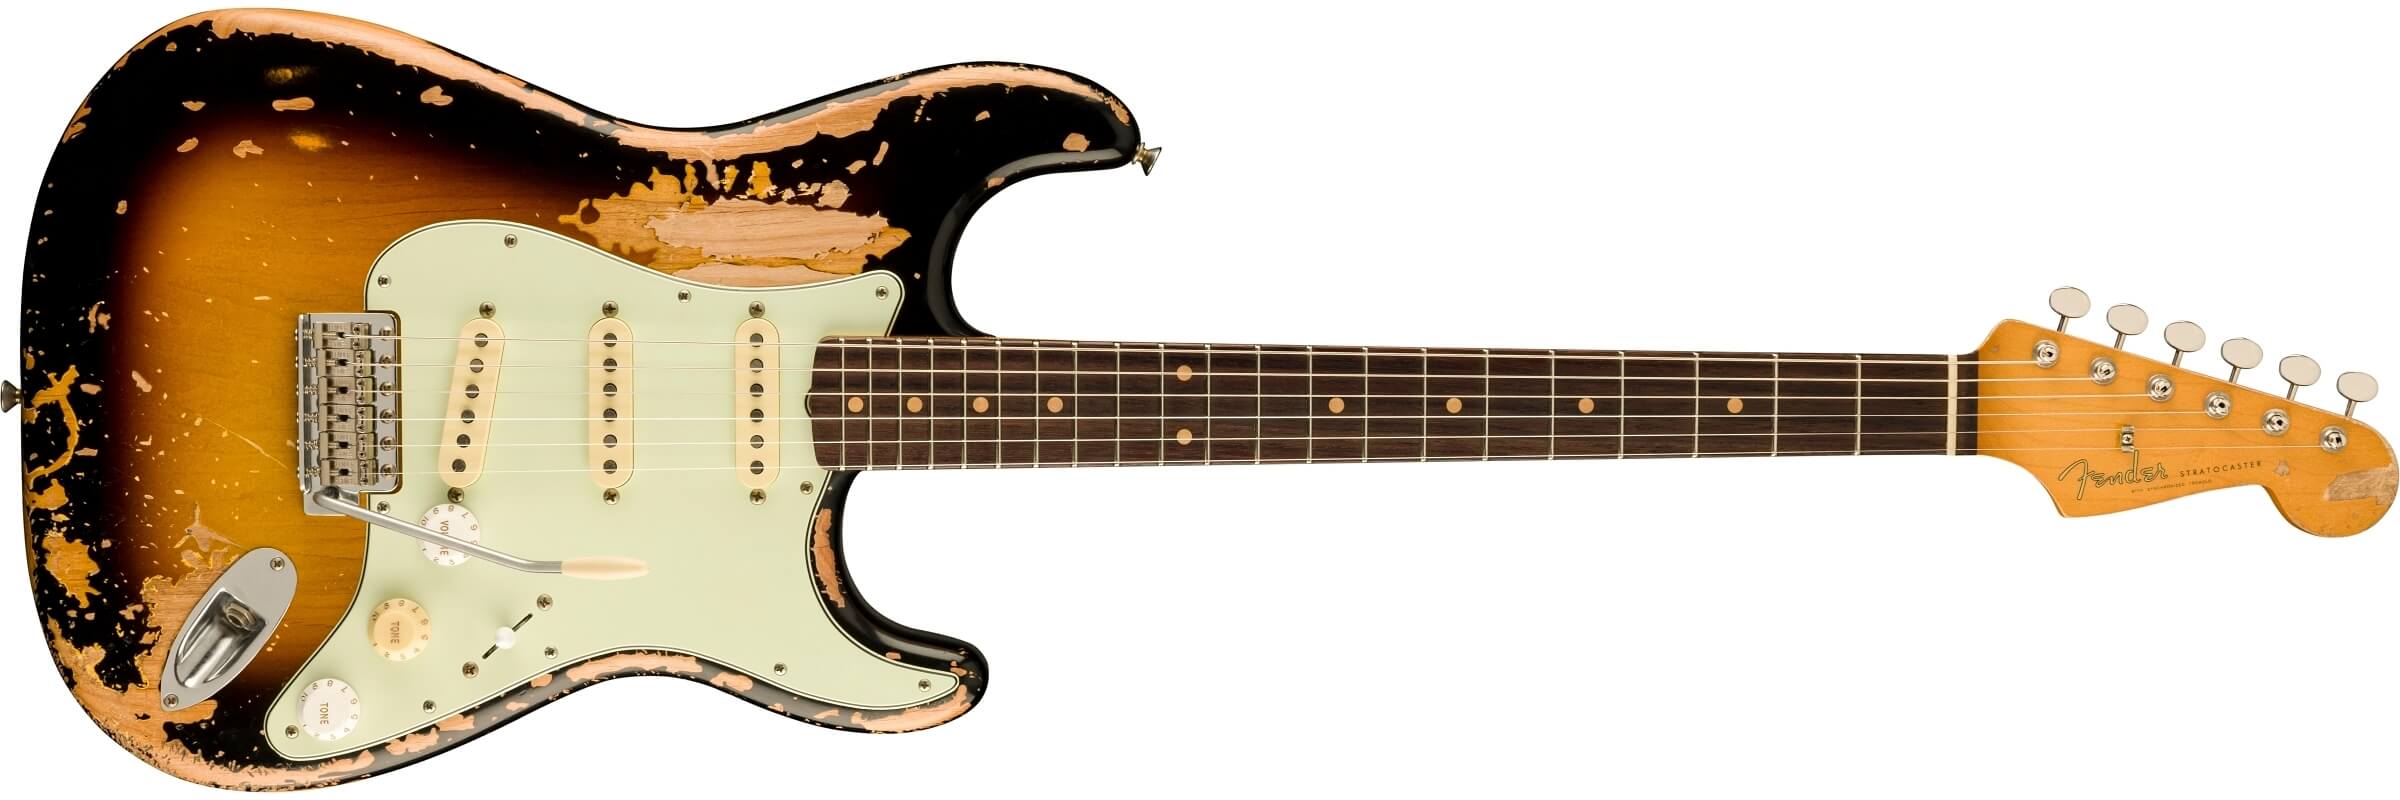 Fender Mike McCready Stratocaster 